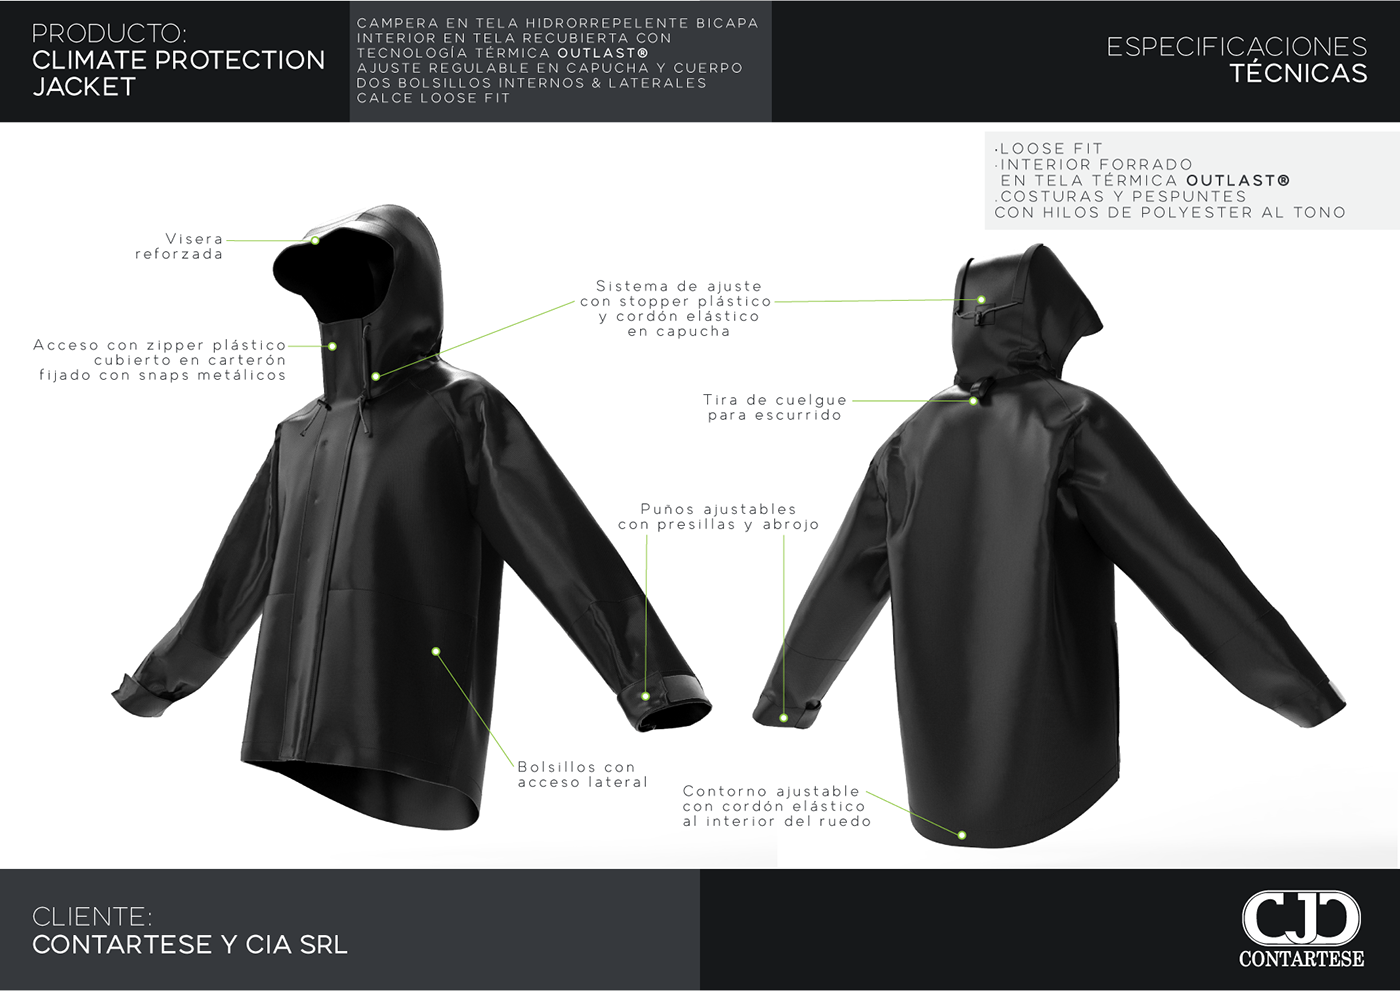 3dclothing Apparel Design Clo3d clothing design design keyshot marvelous designer product Sportswear